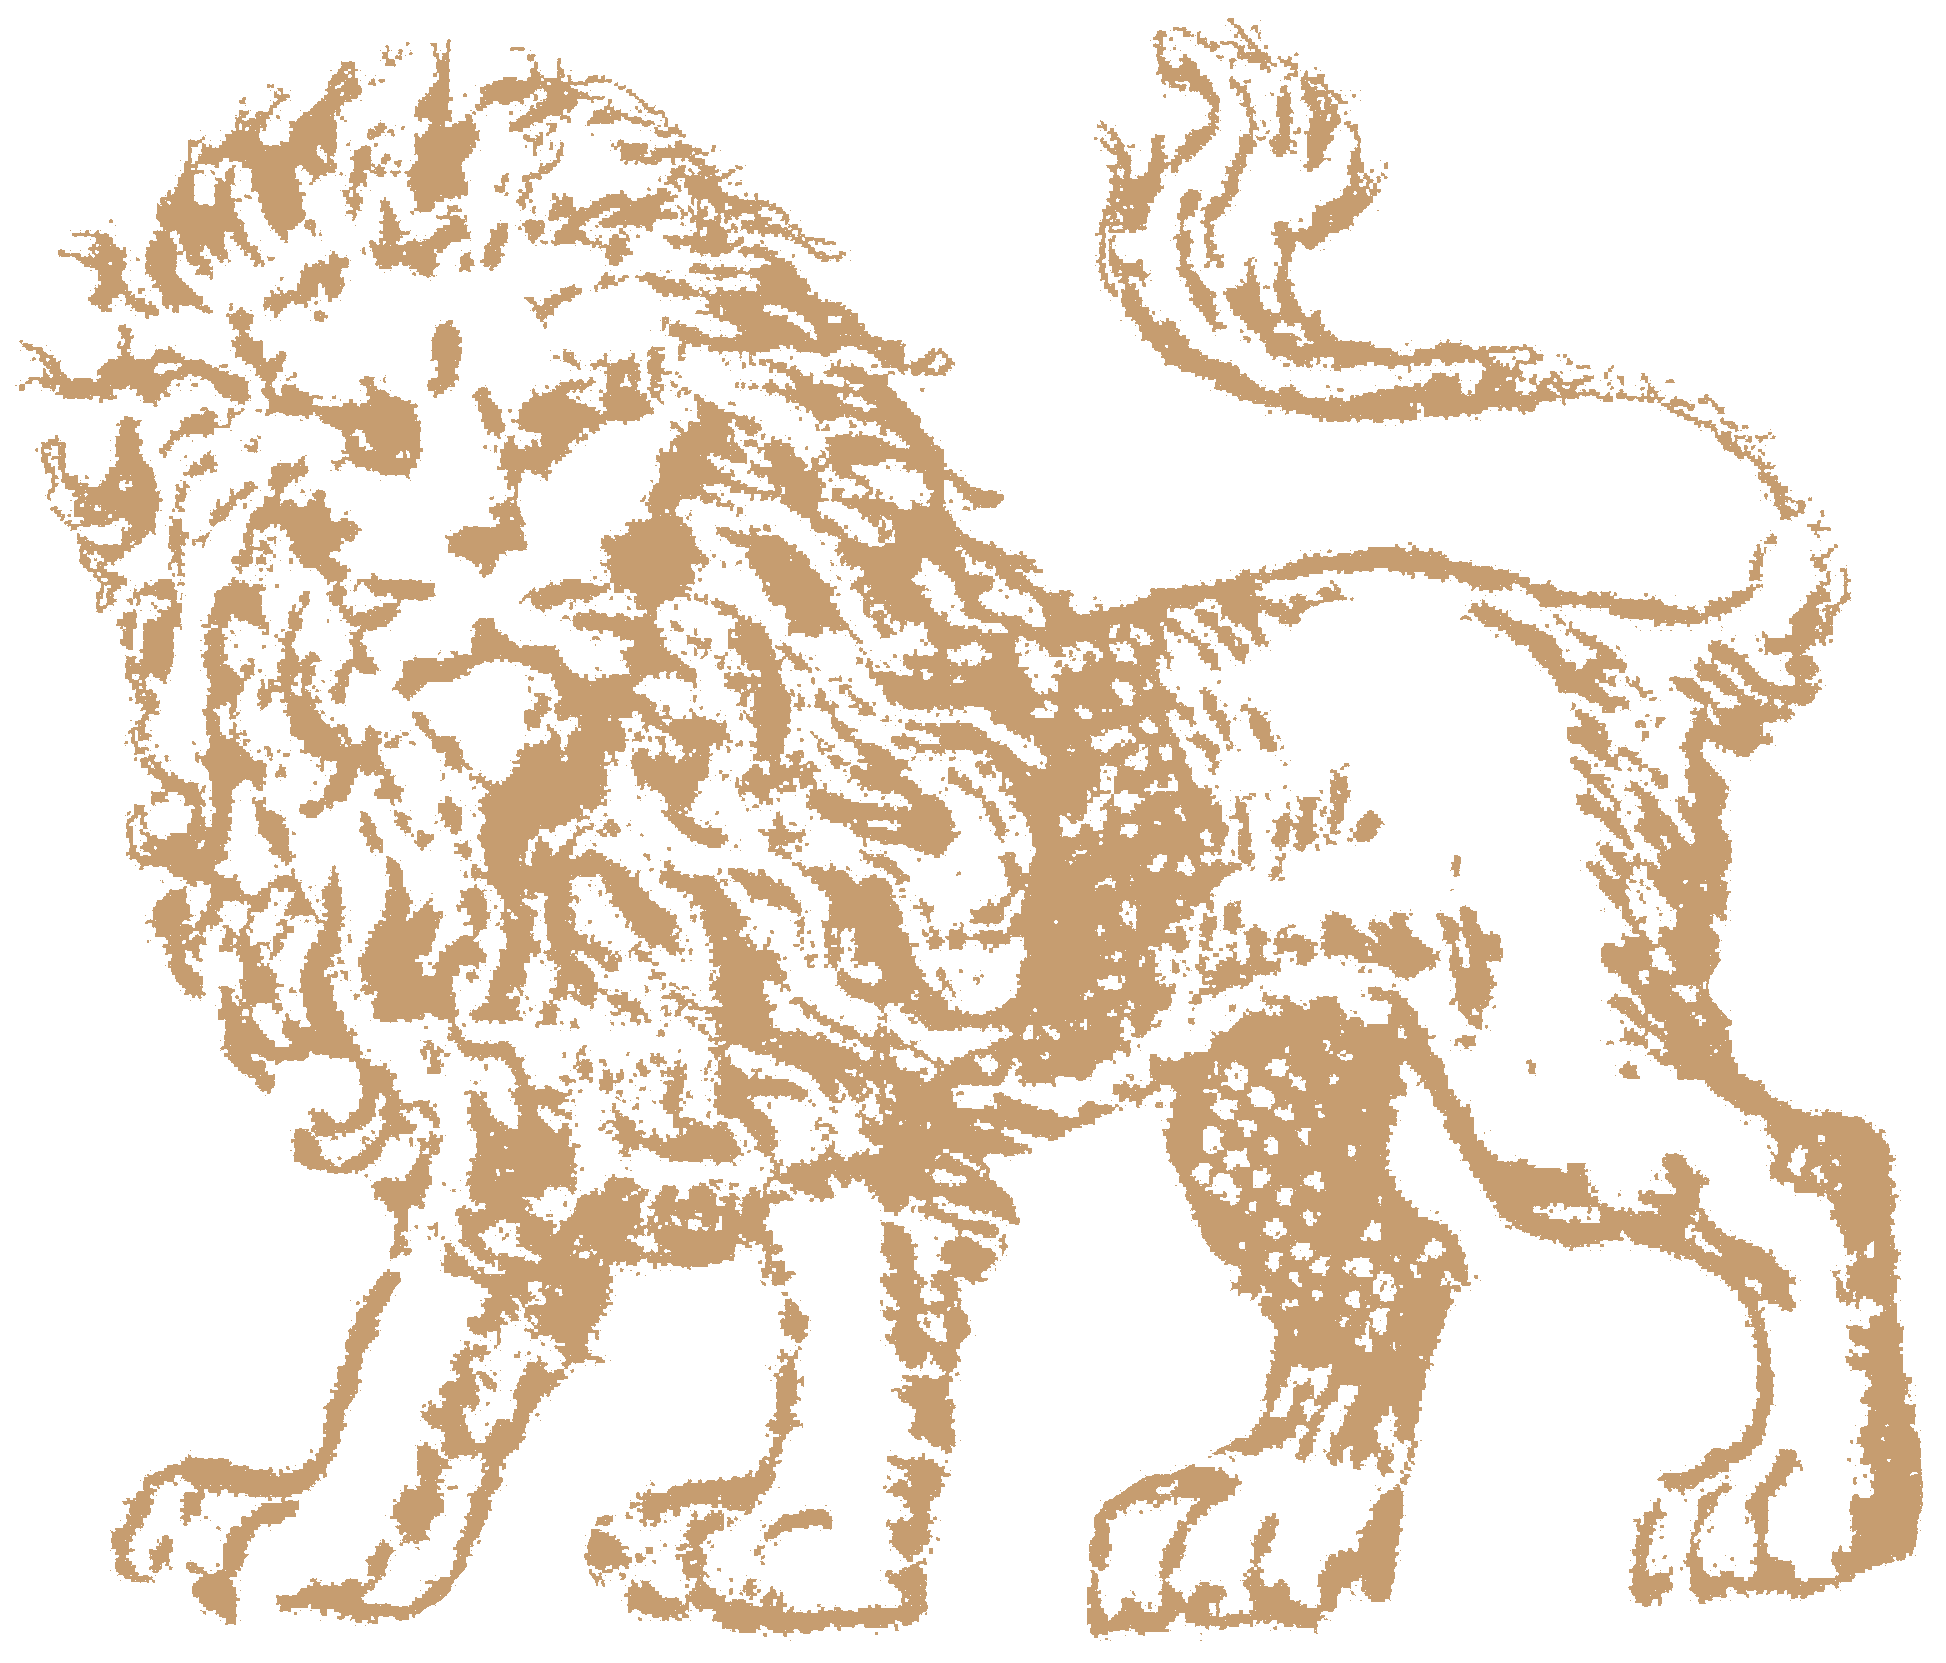 An illustration of the Löwenbräu lion